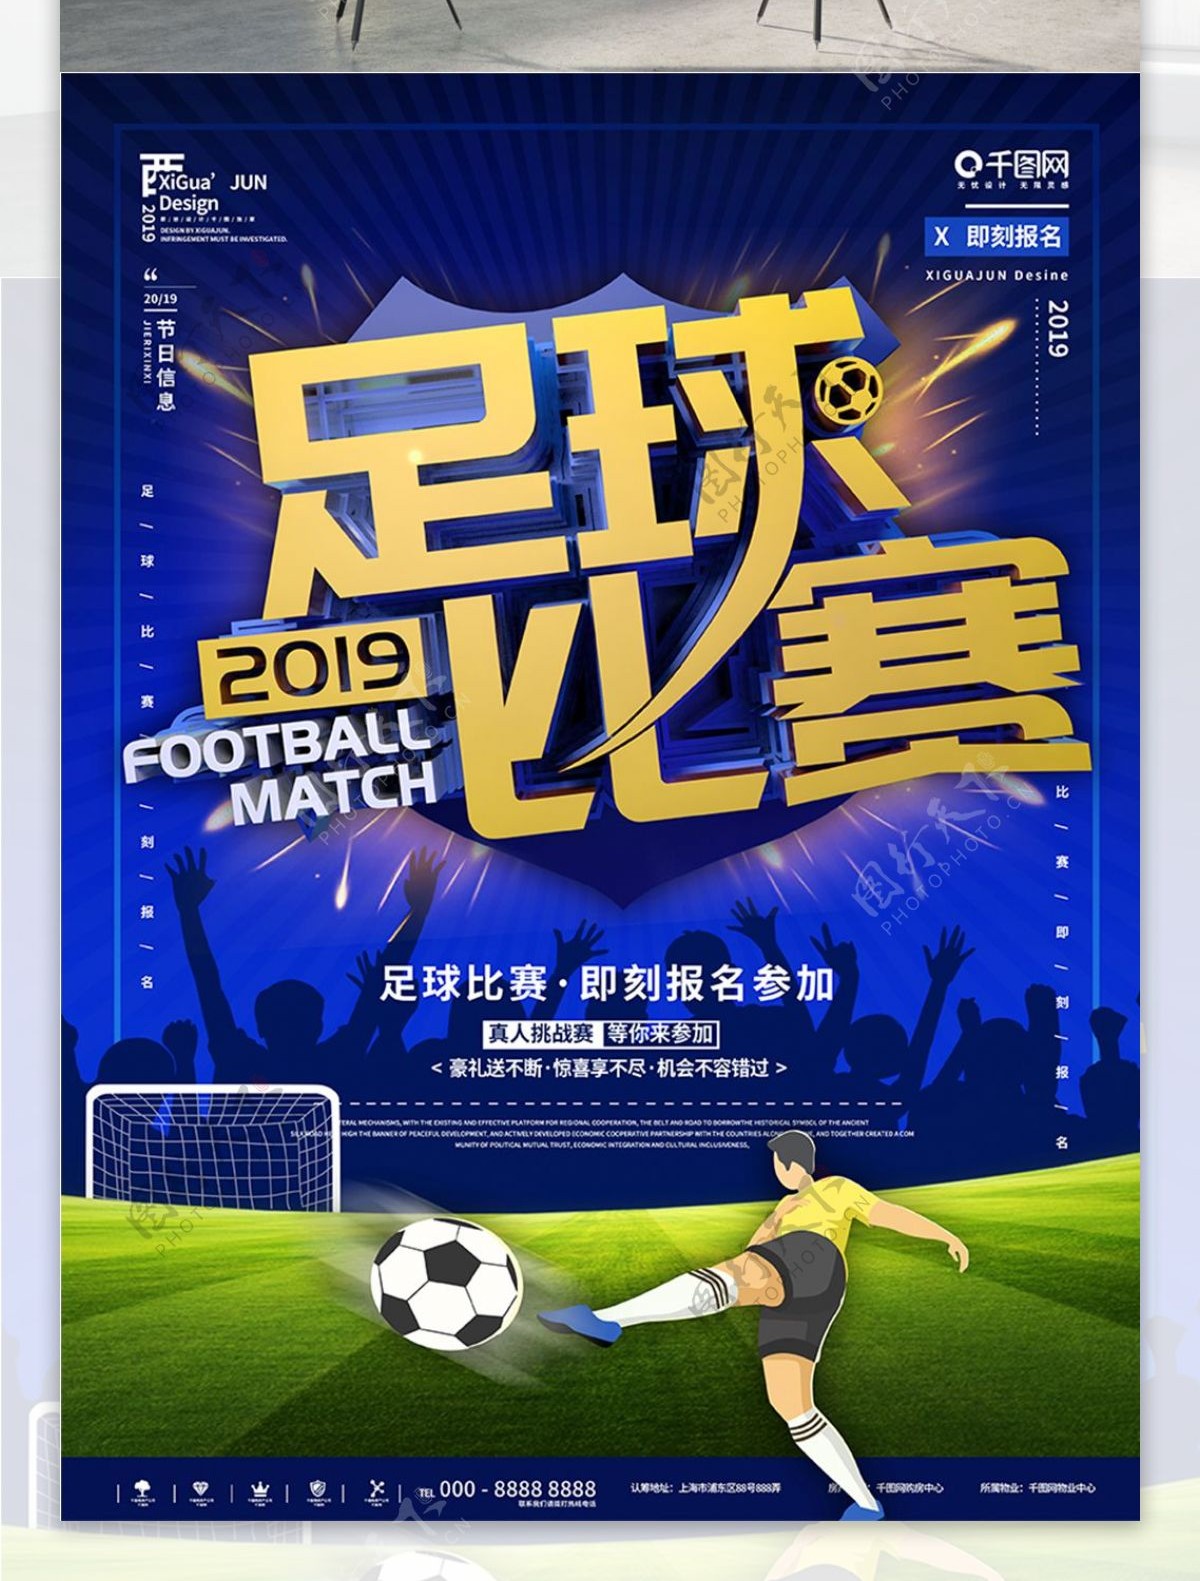 蓝色简约足球比赛报名宣传海报